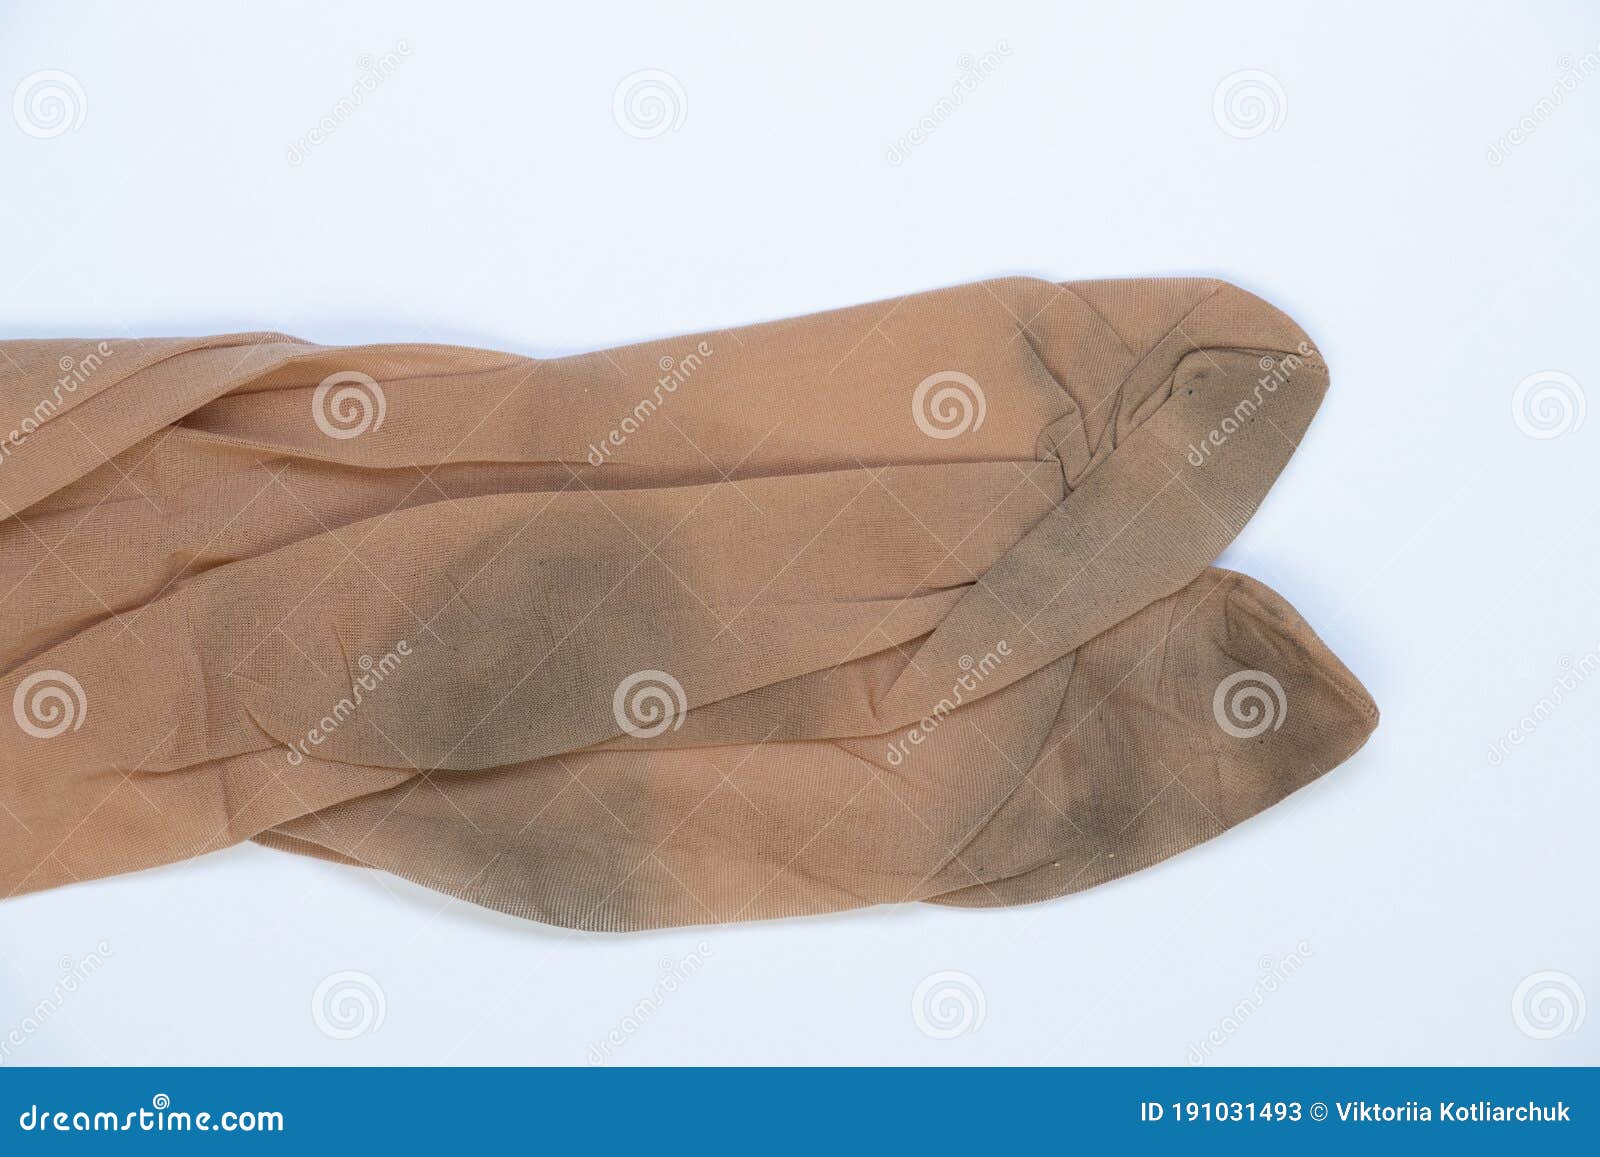 βρώμικες κάλτσες στο νάιλον πανωφόρι γυναικεία κάλτσες σε λευκό φόντο Στοκ  Εικόνα - εικόνα από lifestyle: 191031493